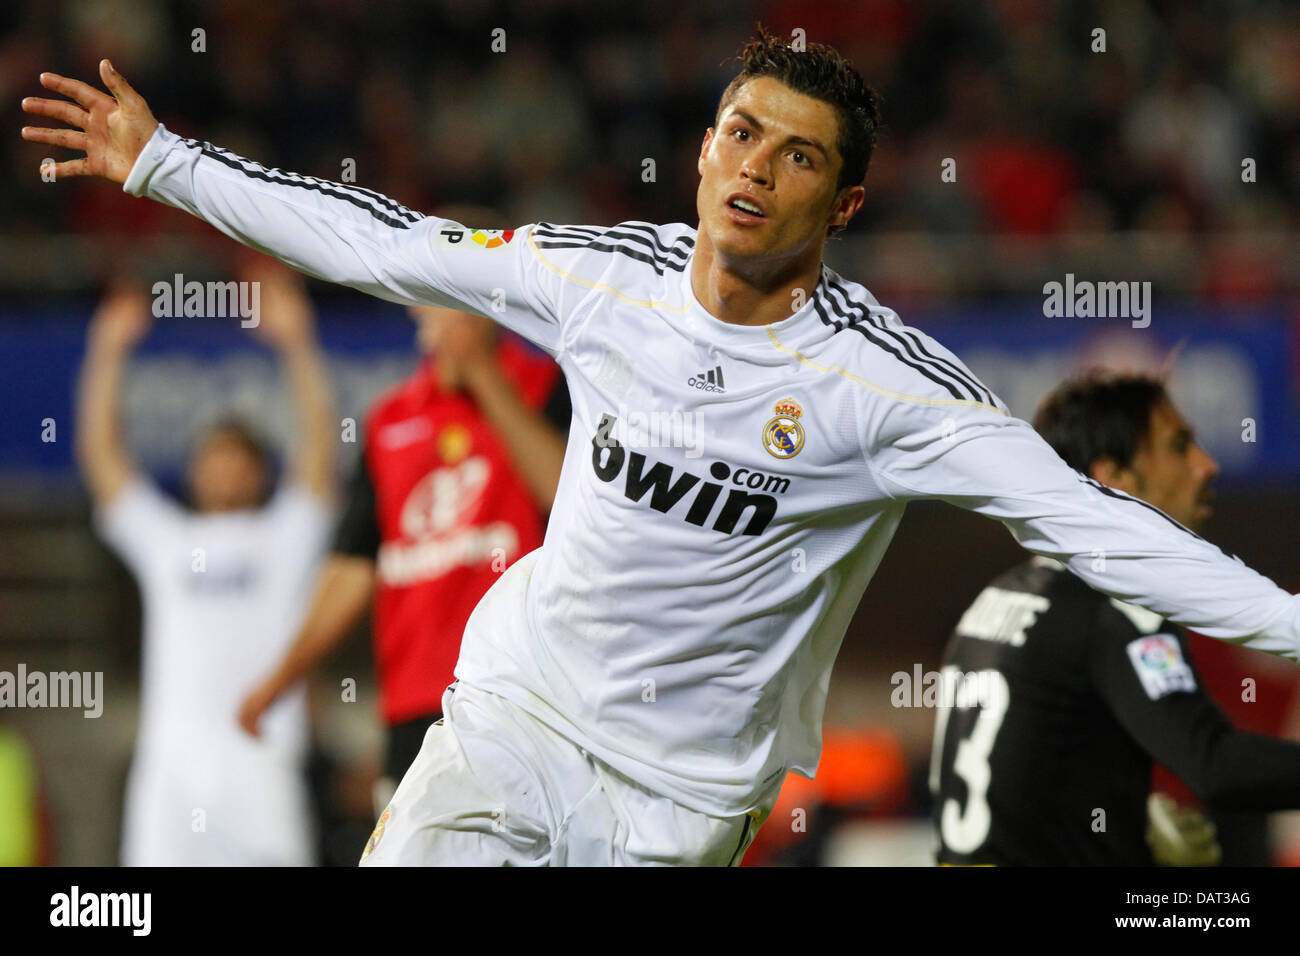 Joueur de football du Real Madrid Cristiano Ronaldo célèbre après avoir marqué un but Banque D'Images